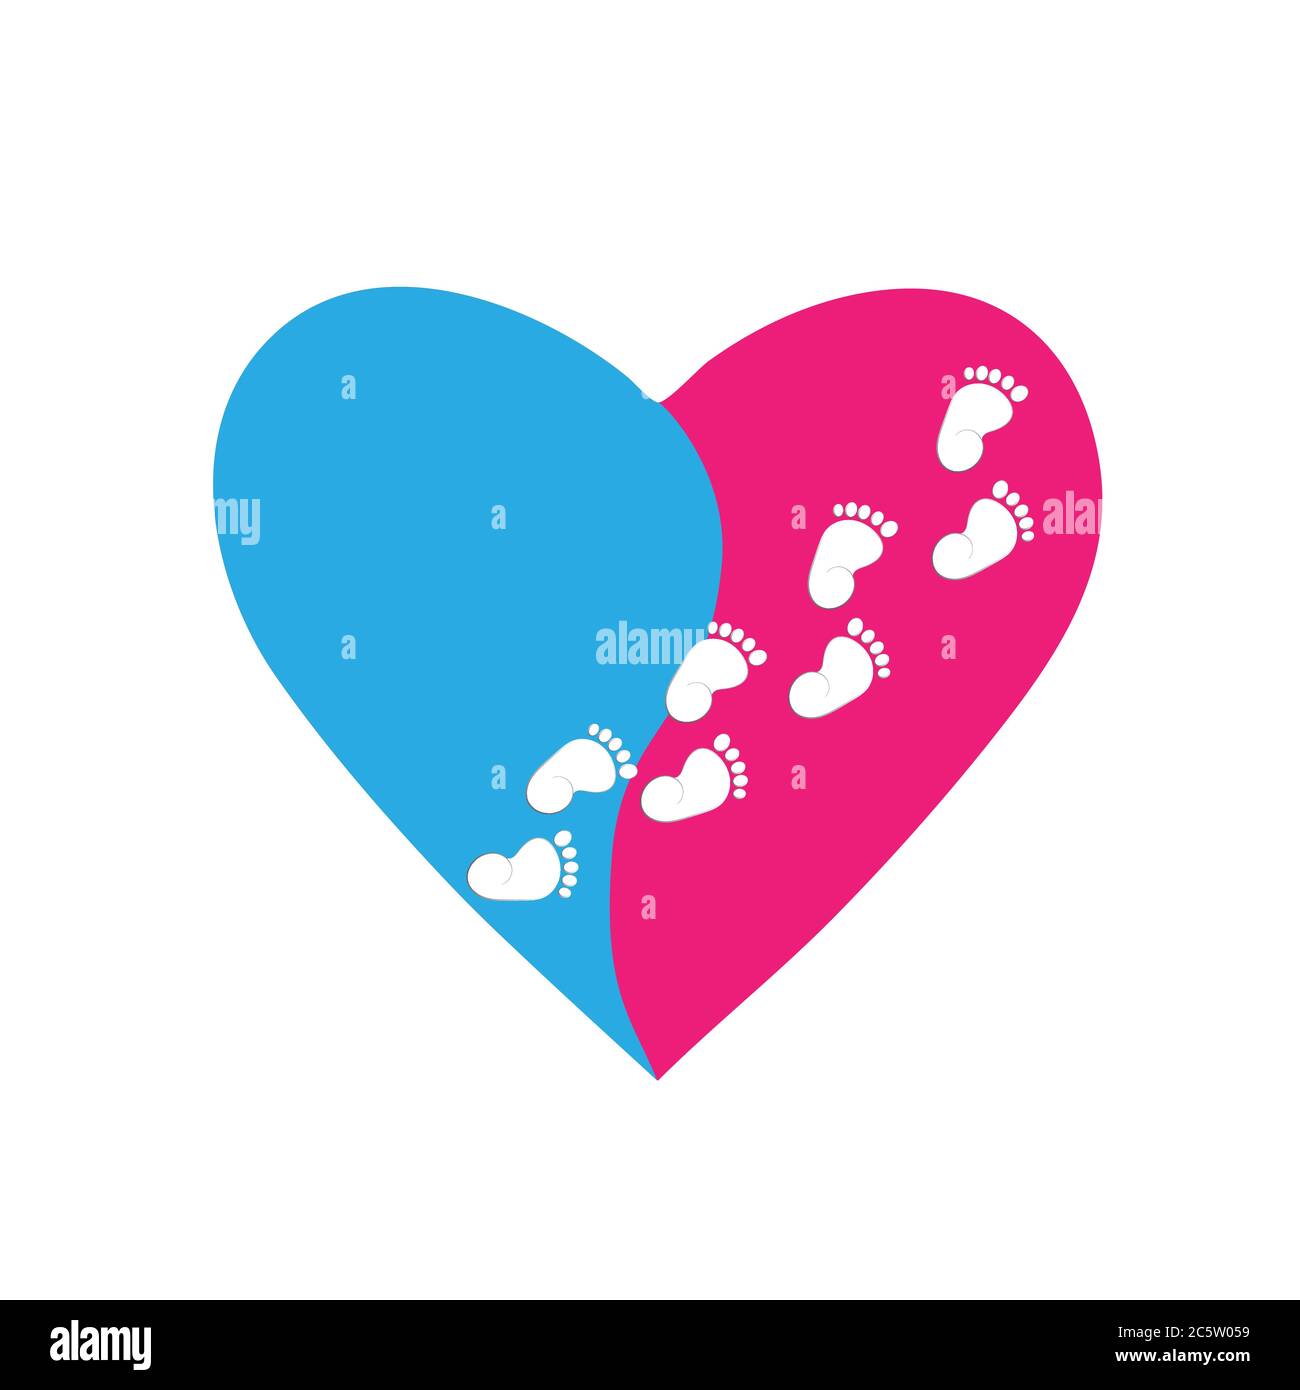 Dos huellas de bebé en forma de corazón. símbolo rojo y azul de un recién  nacido en un corazón.